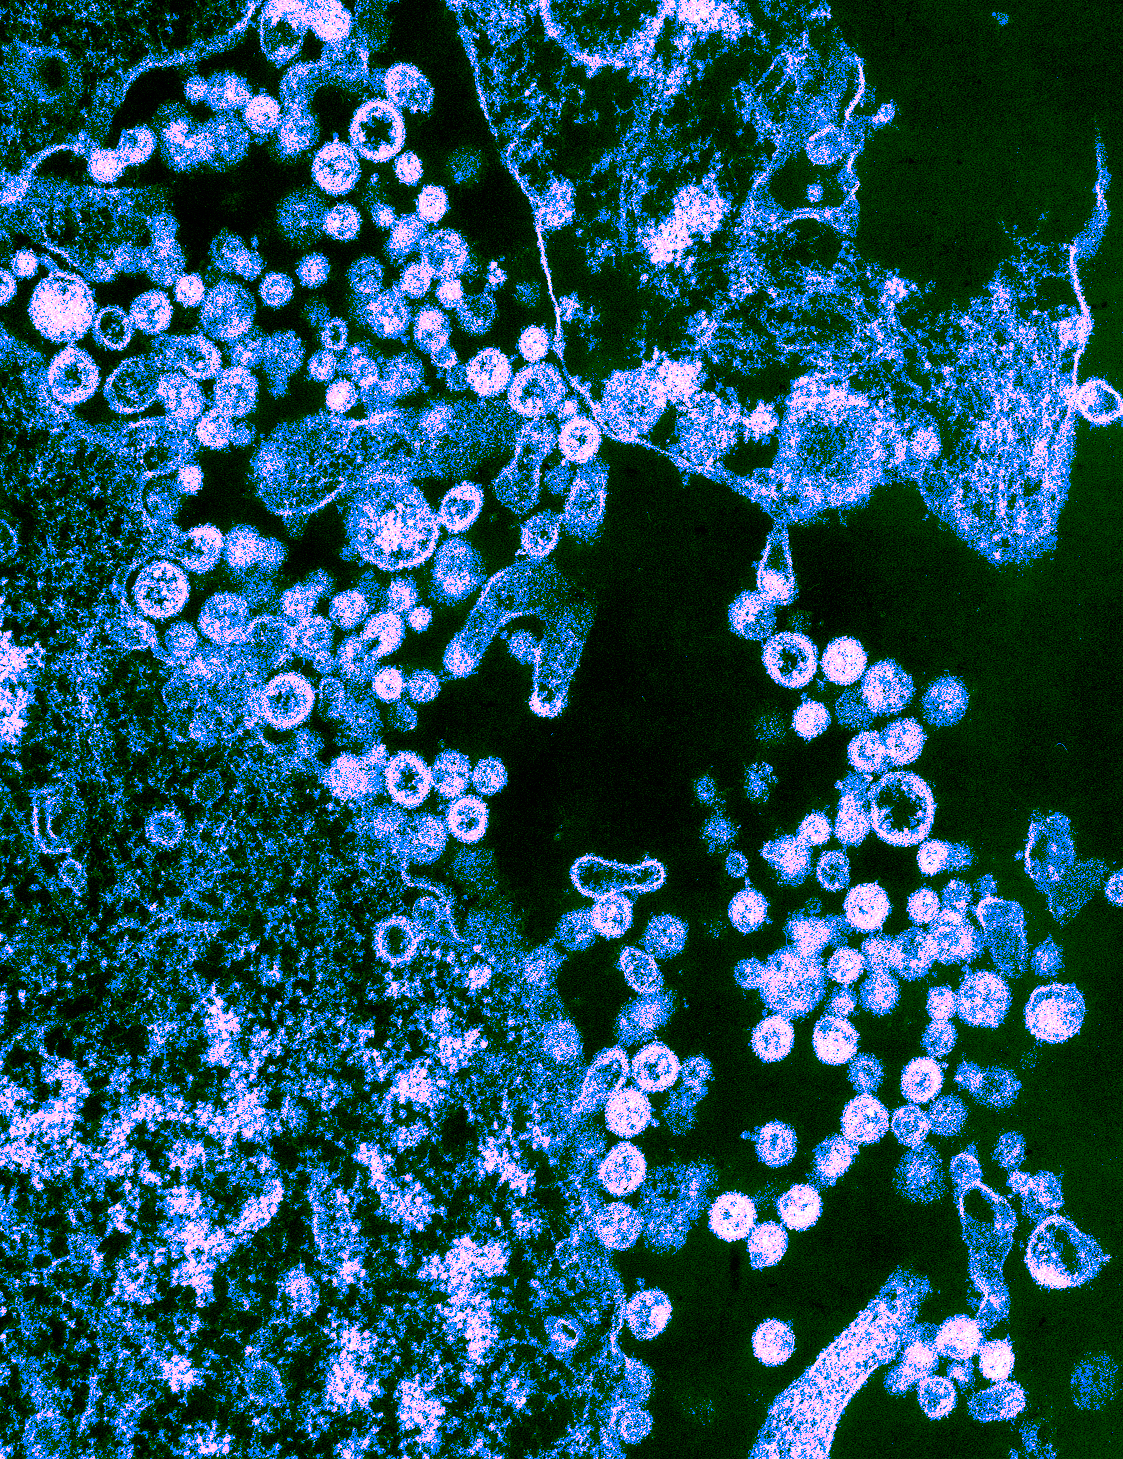 Image of Lassa virus particles